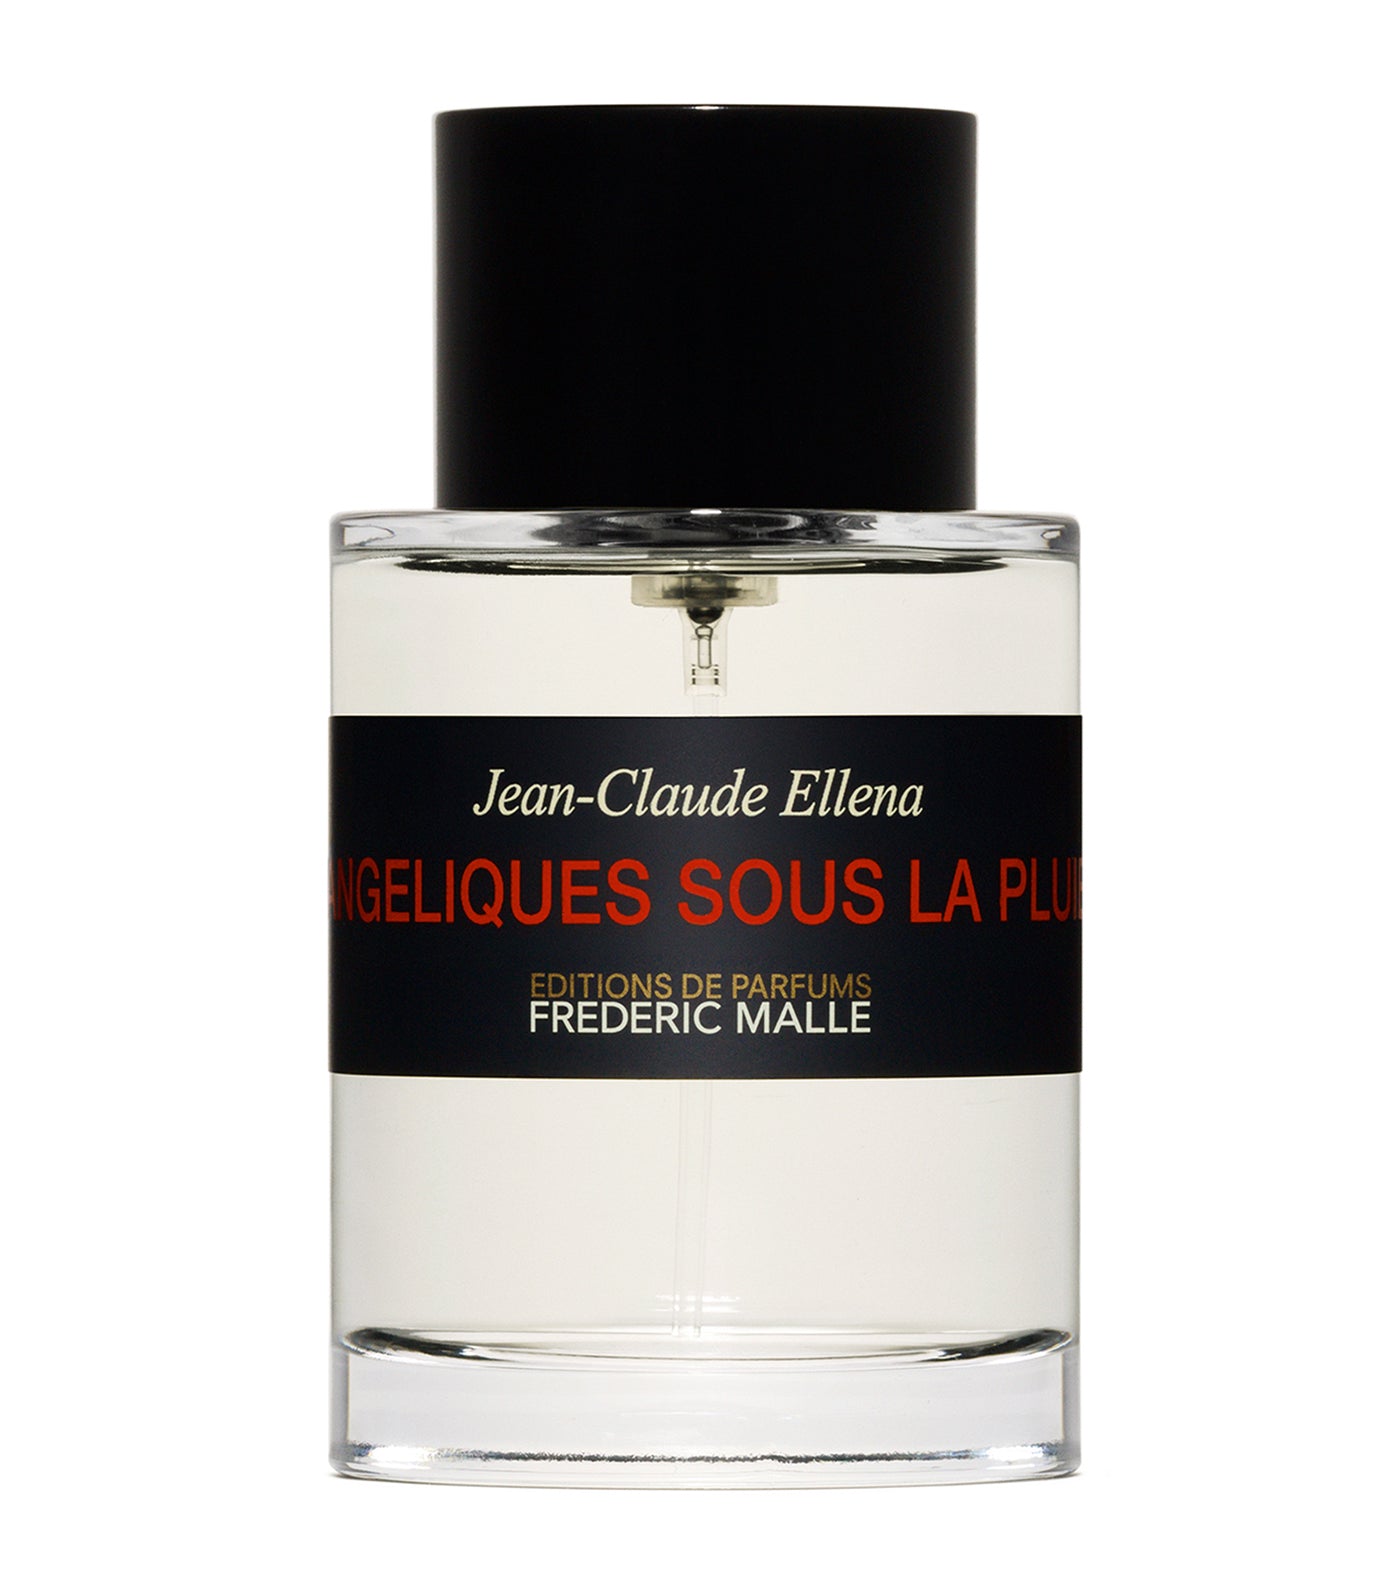 Angeliques Sous La Pluie Perfume by Jean-Claude Ellena